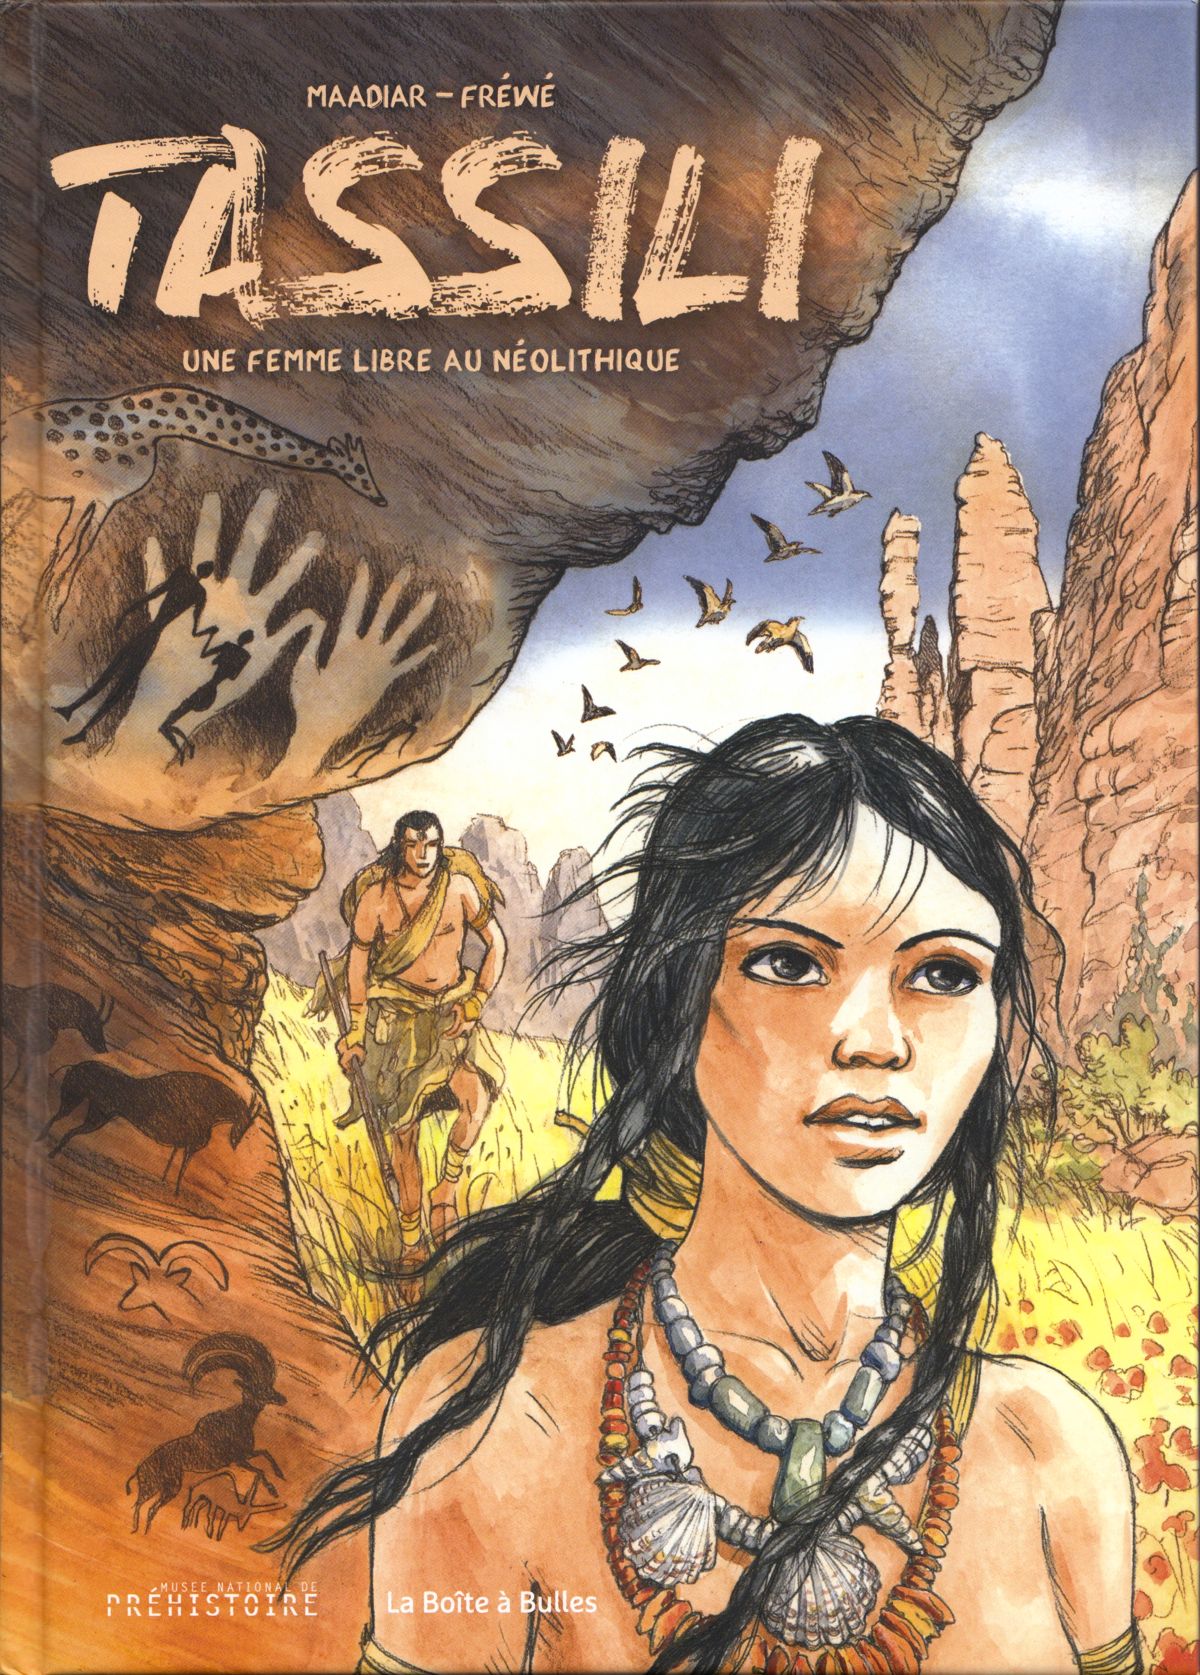 Couverture de la bande dessinée « Tassili, une femme libre au Néolithique » de Maadiar et Fréwé, présentée en avant-première au Musée national de Préhistoire des Eyzies, à l’occasion de la conférence du chercheur Jean-Loïc Le Quellec.